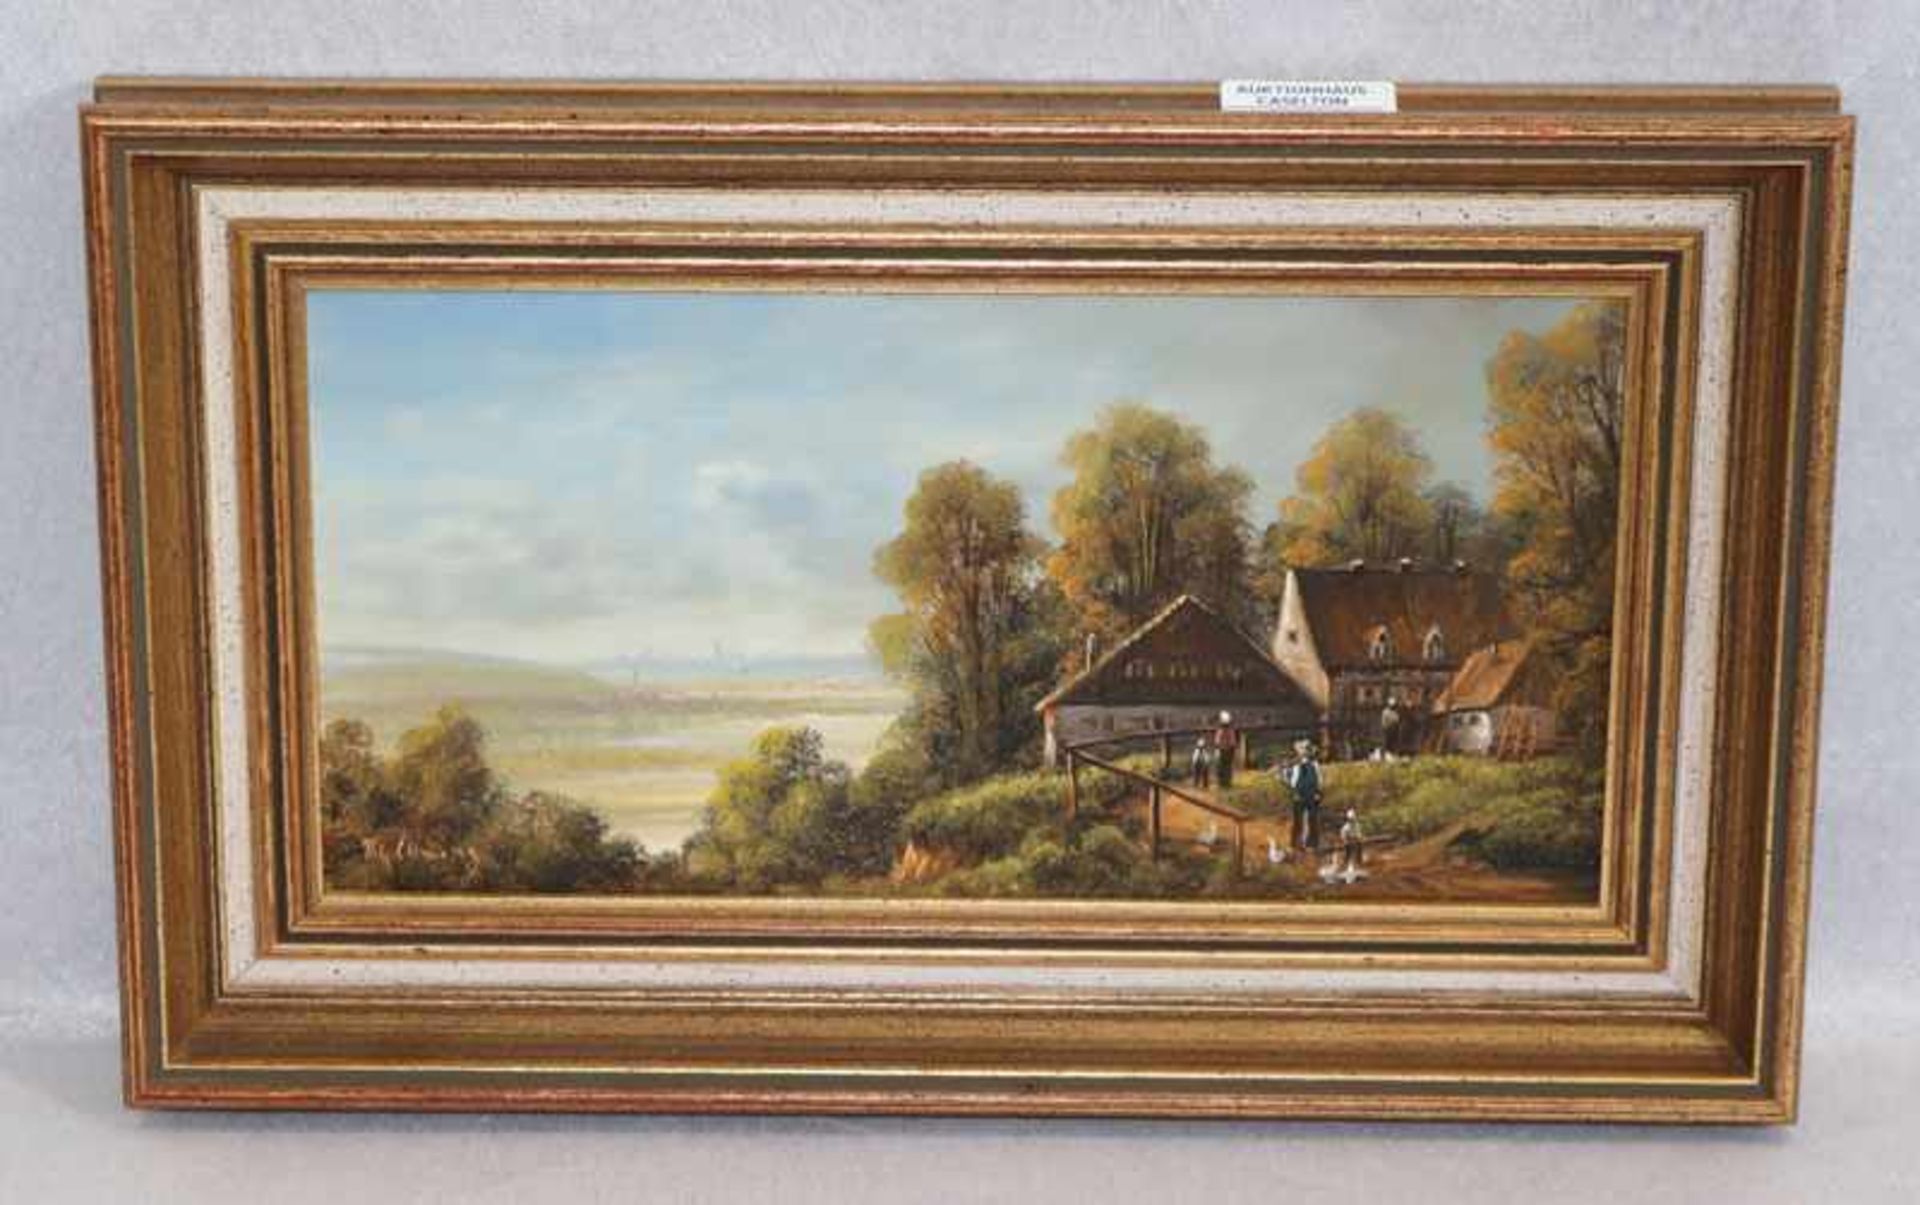 Gemälde ÖL/Holz 'Landschafts-Szenerie mit Bauernhaus', unleserlich signiert, gerahmt, incl. Rahmen